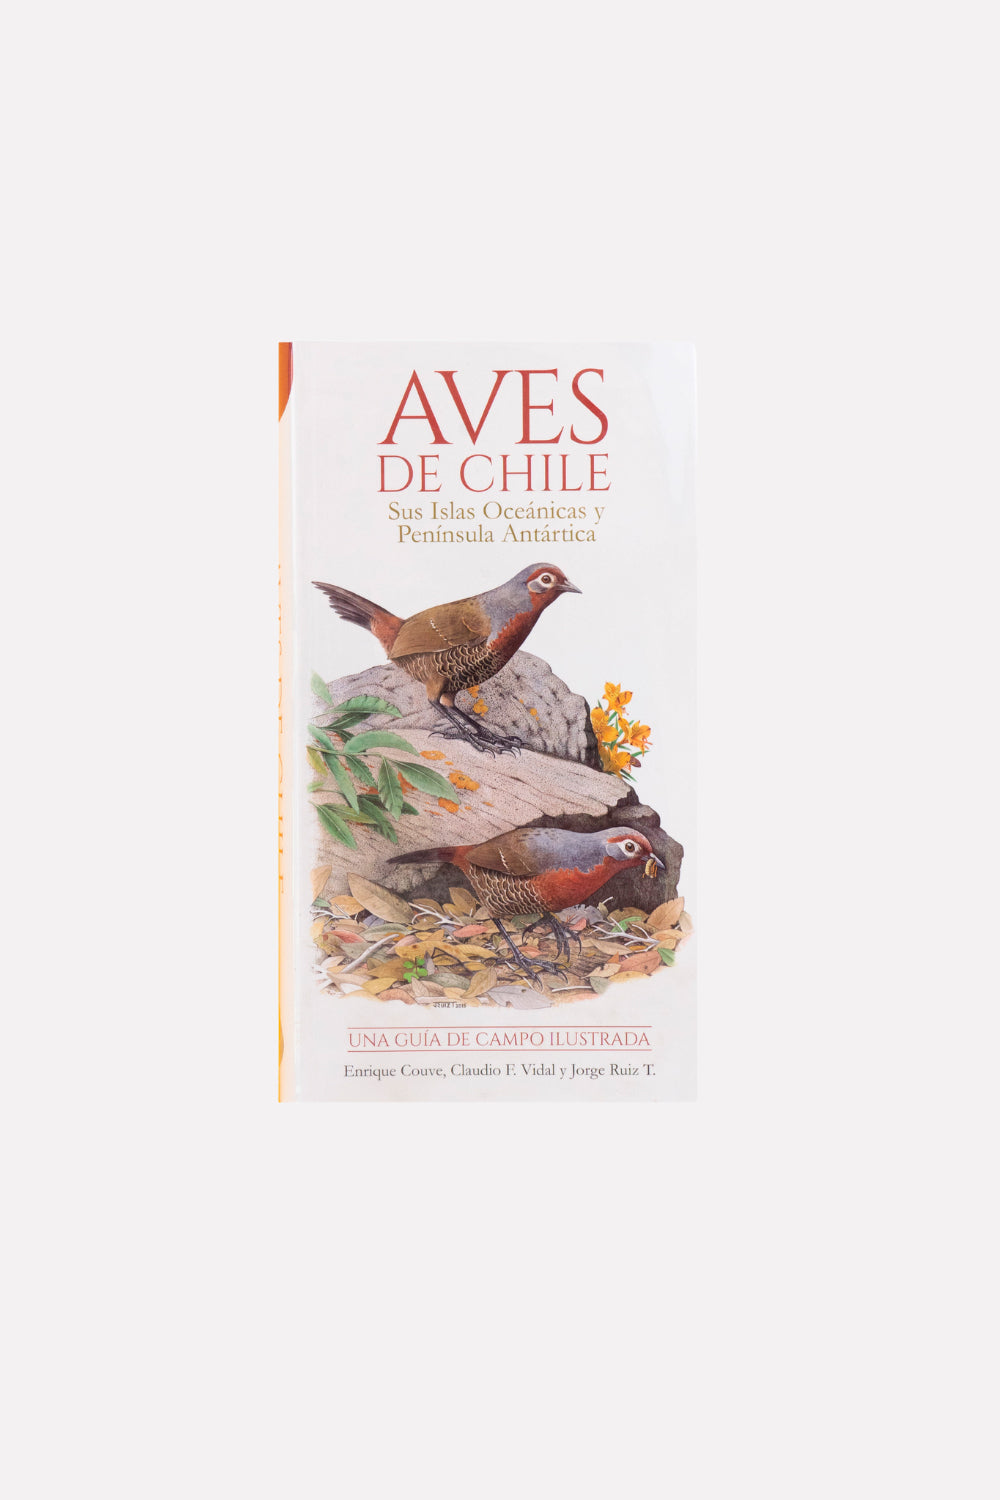 Libro "Aves de Chile"